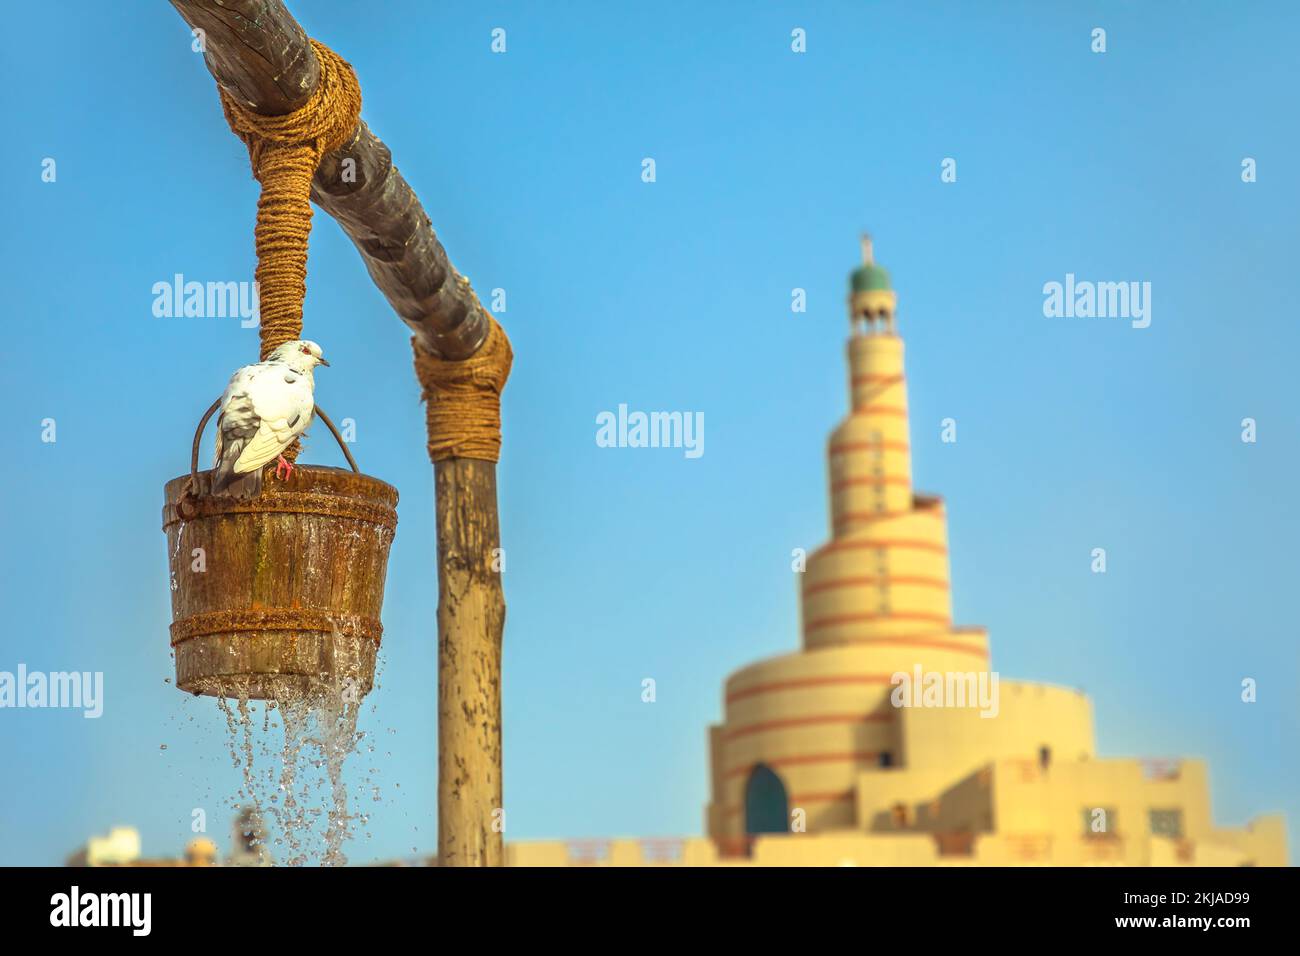 Nahaufnahme der Taube am alten Brunnen, einem berühmten Touristenort mitten im Souk Waqif im Zentrum von Doha, Katar. Naher Osten, Arabische Halbinsel. Sonnig Stockfoto